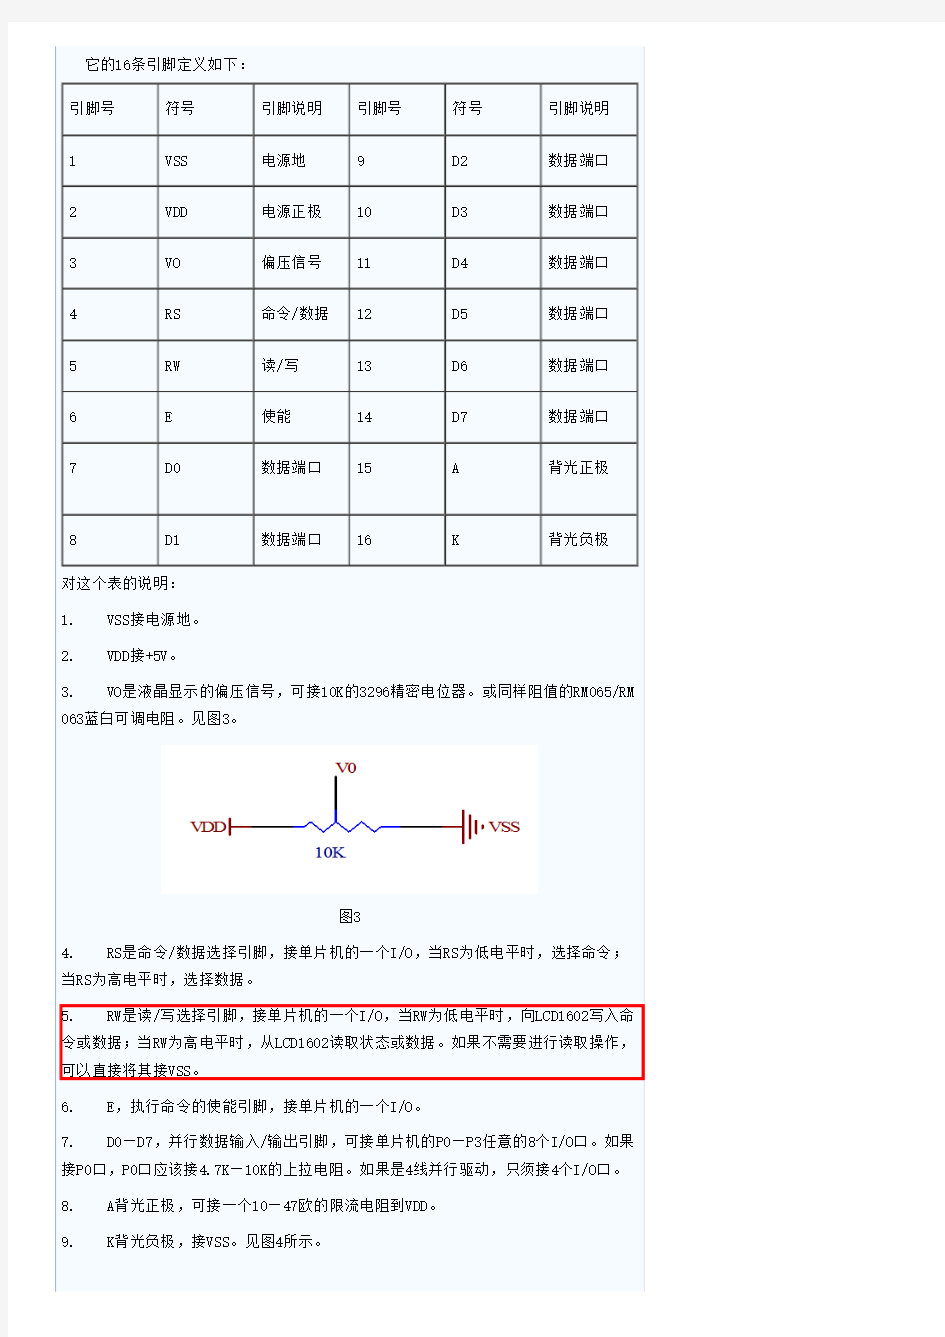 LCD1602使用手册-中文详细版